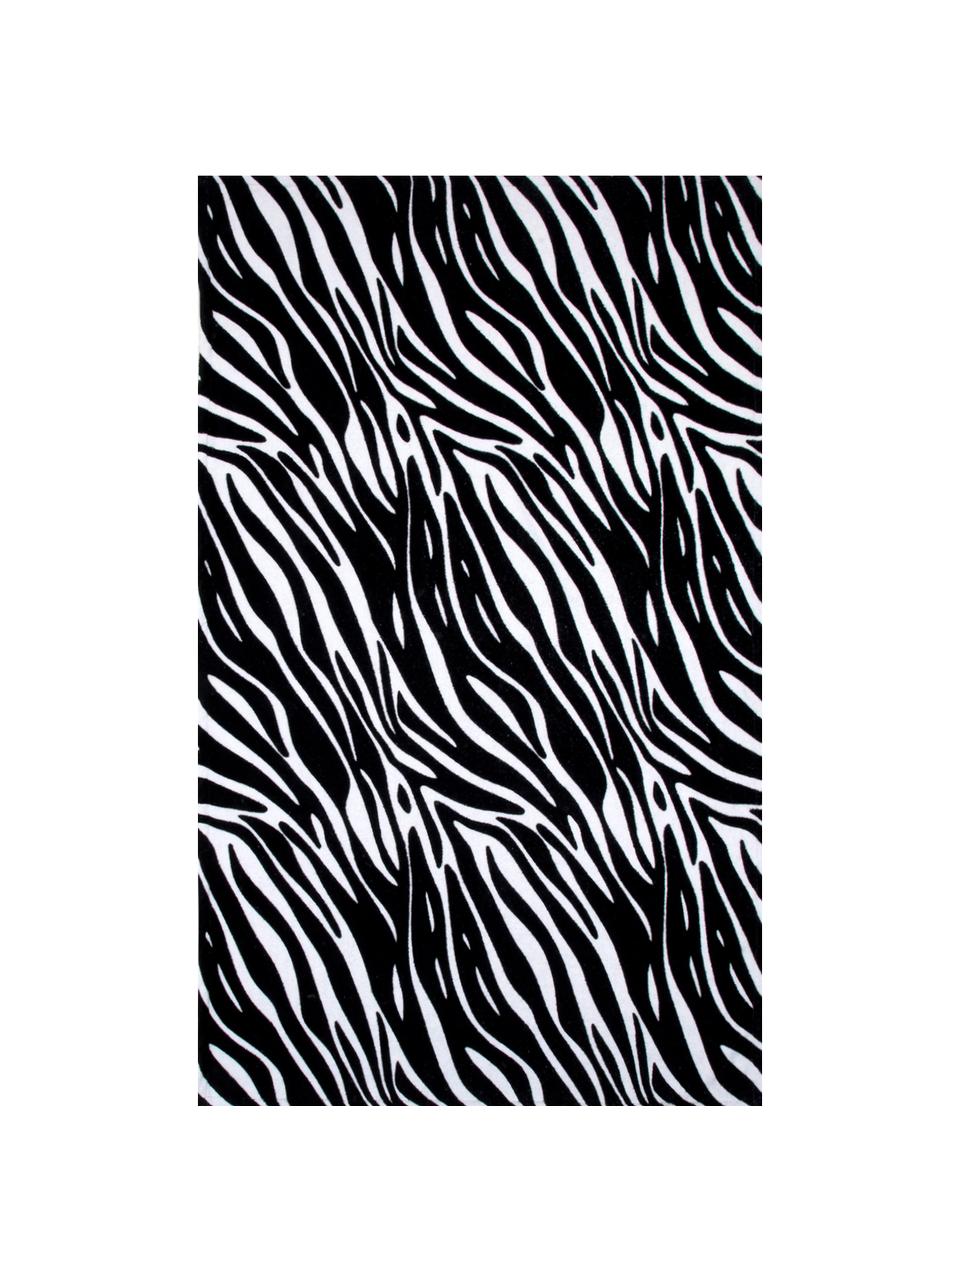 Strandlaken Zebra, 100% katoen, lichte kwaliteit, 350 g/m², Zwart, wit, 90 x 160 cm